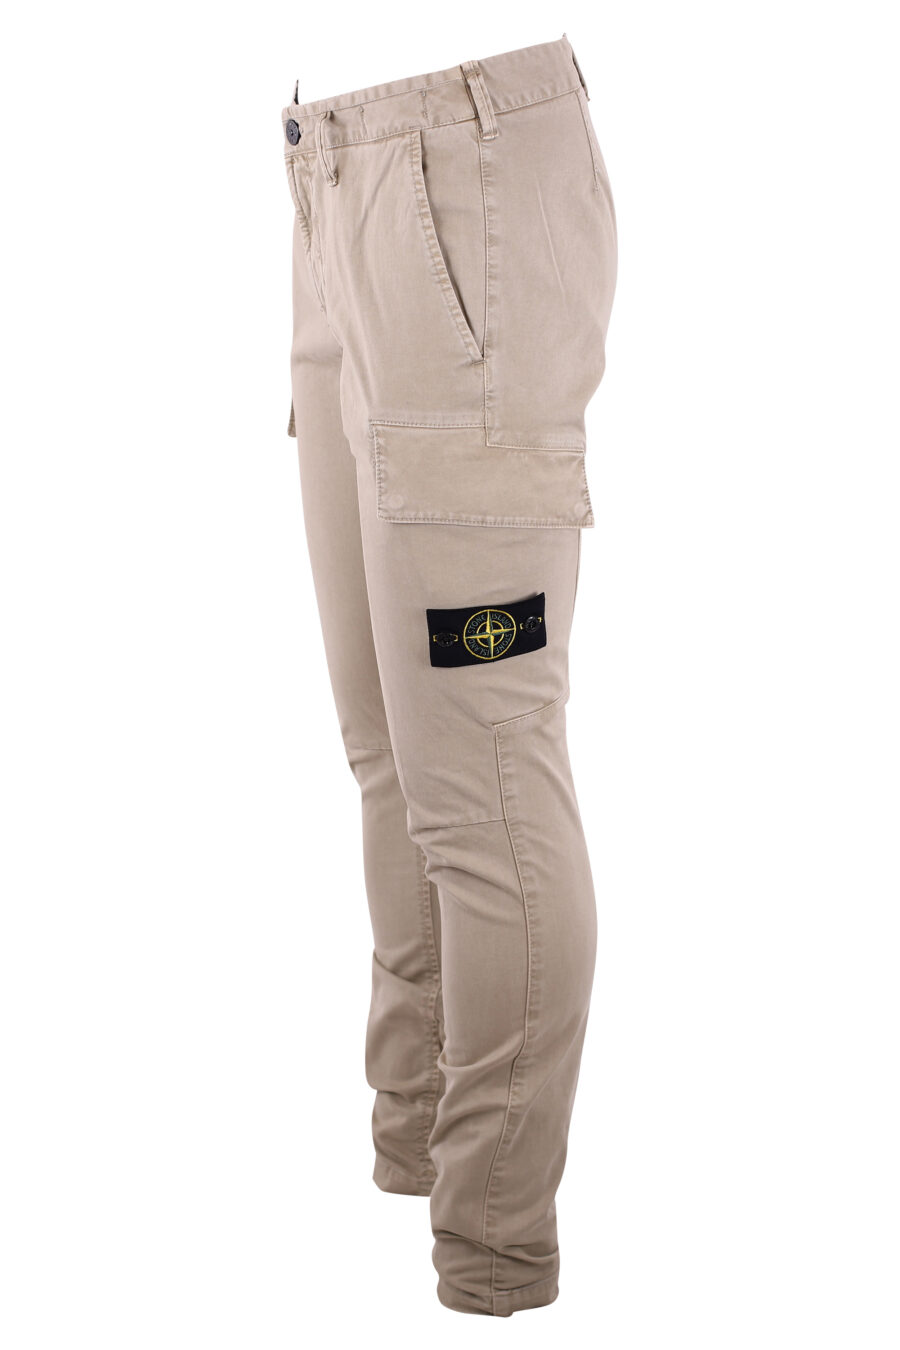 Pantalón beige con bolsillos laterales y parche - IMG 3240